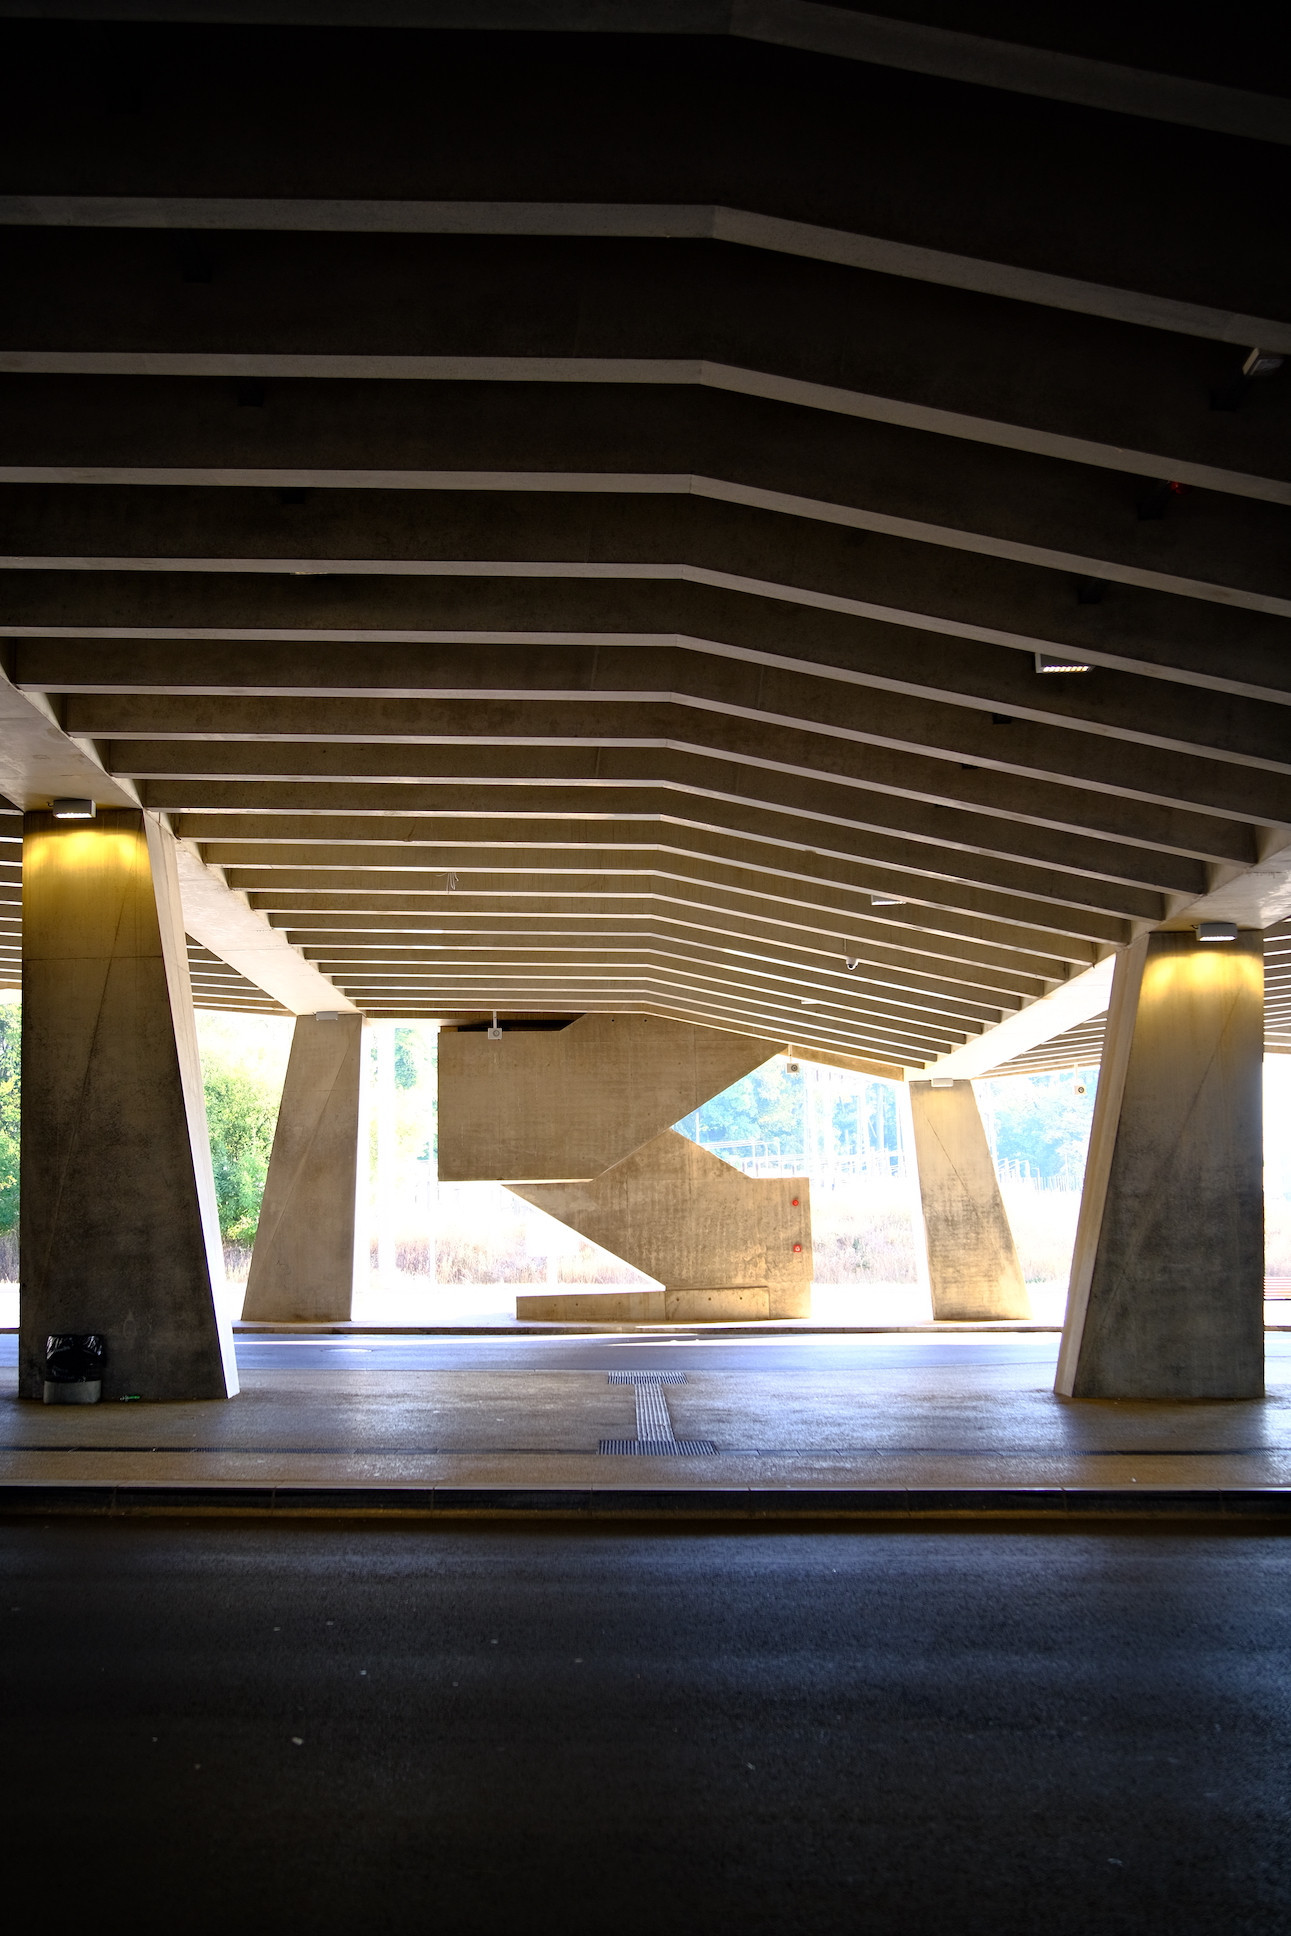 Sous le parking, la gare de bus dévoile un caractère géométrique. (Photo: Étienne Duval)